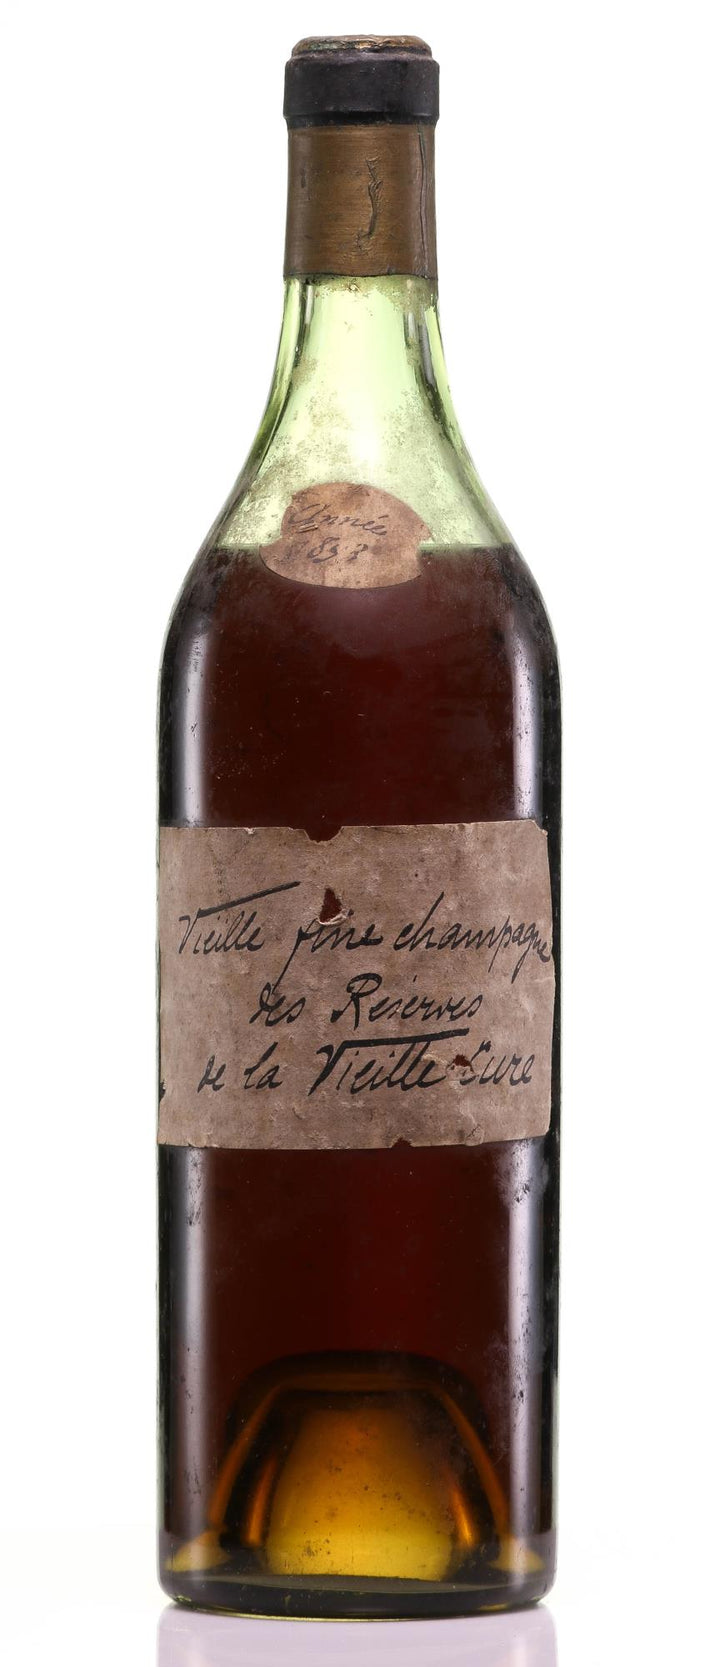 1853 Les Reserve de la Vieille Cure Vieille Fine Champagne Cognac (96+ Wine Spectator Rating)